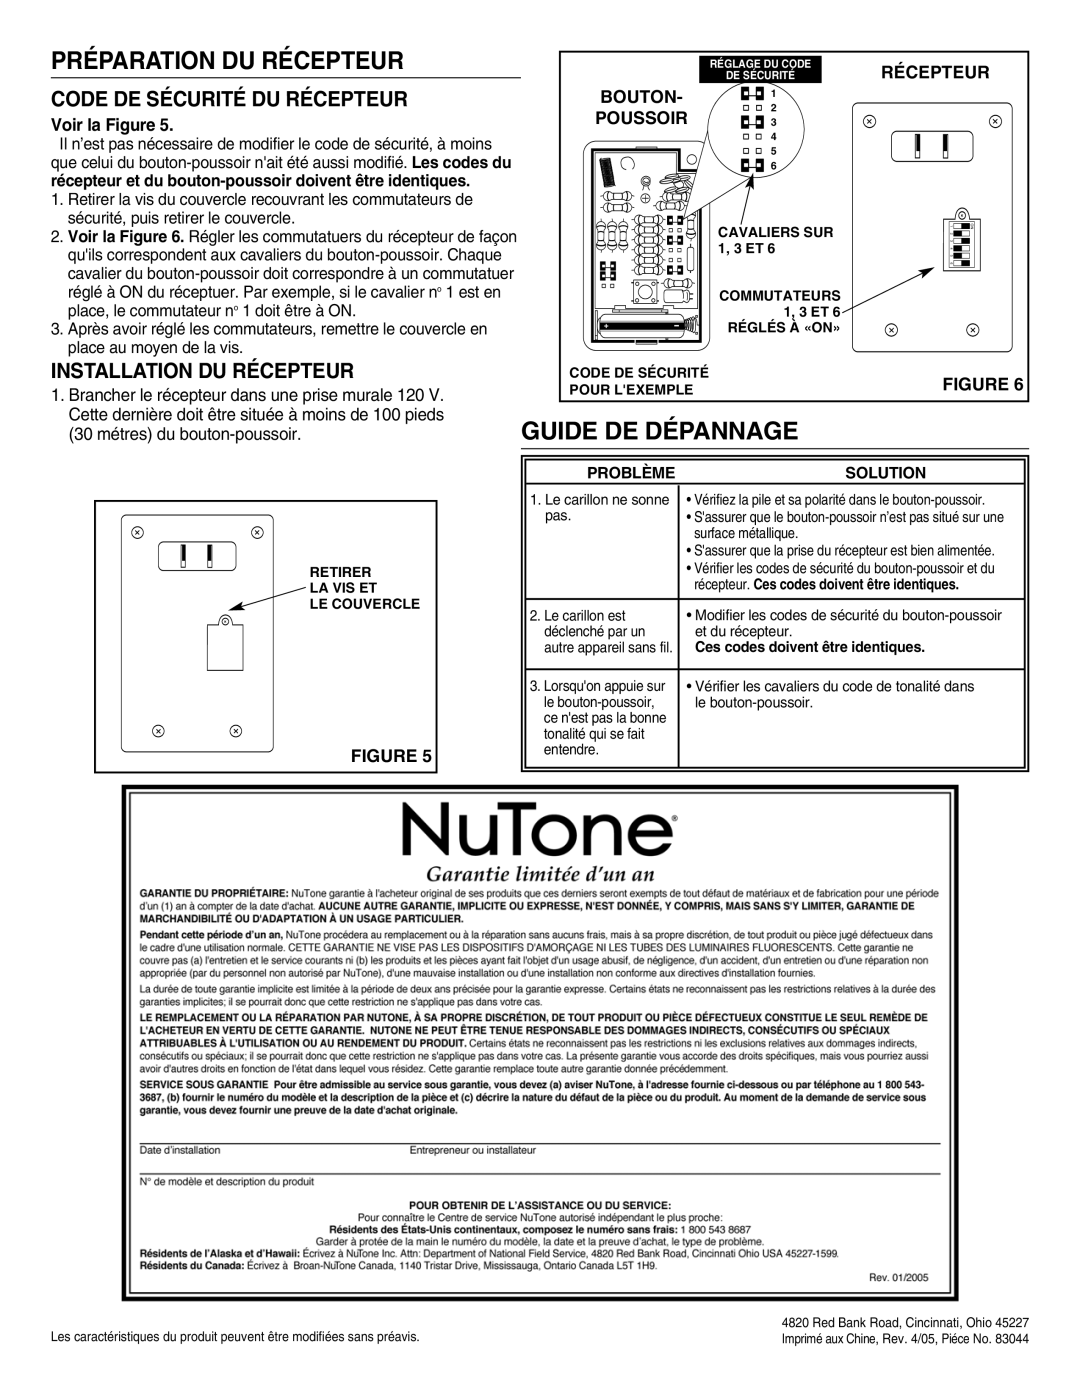 NuTone LA-204WH Préparation Du Récepteur, Guide De Dépannage, Code De Sécurité Du Récepteur, Installation Du Récepteur 